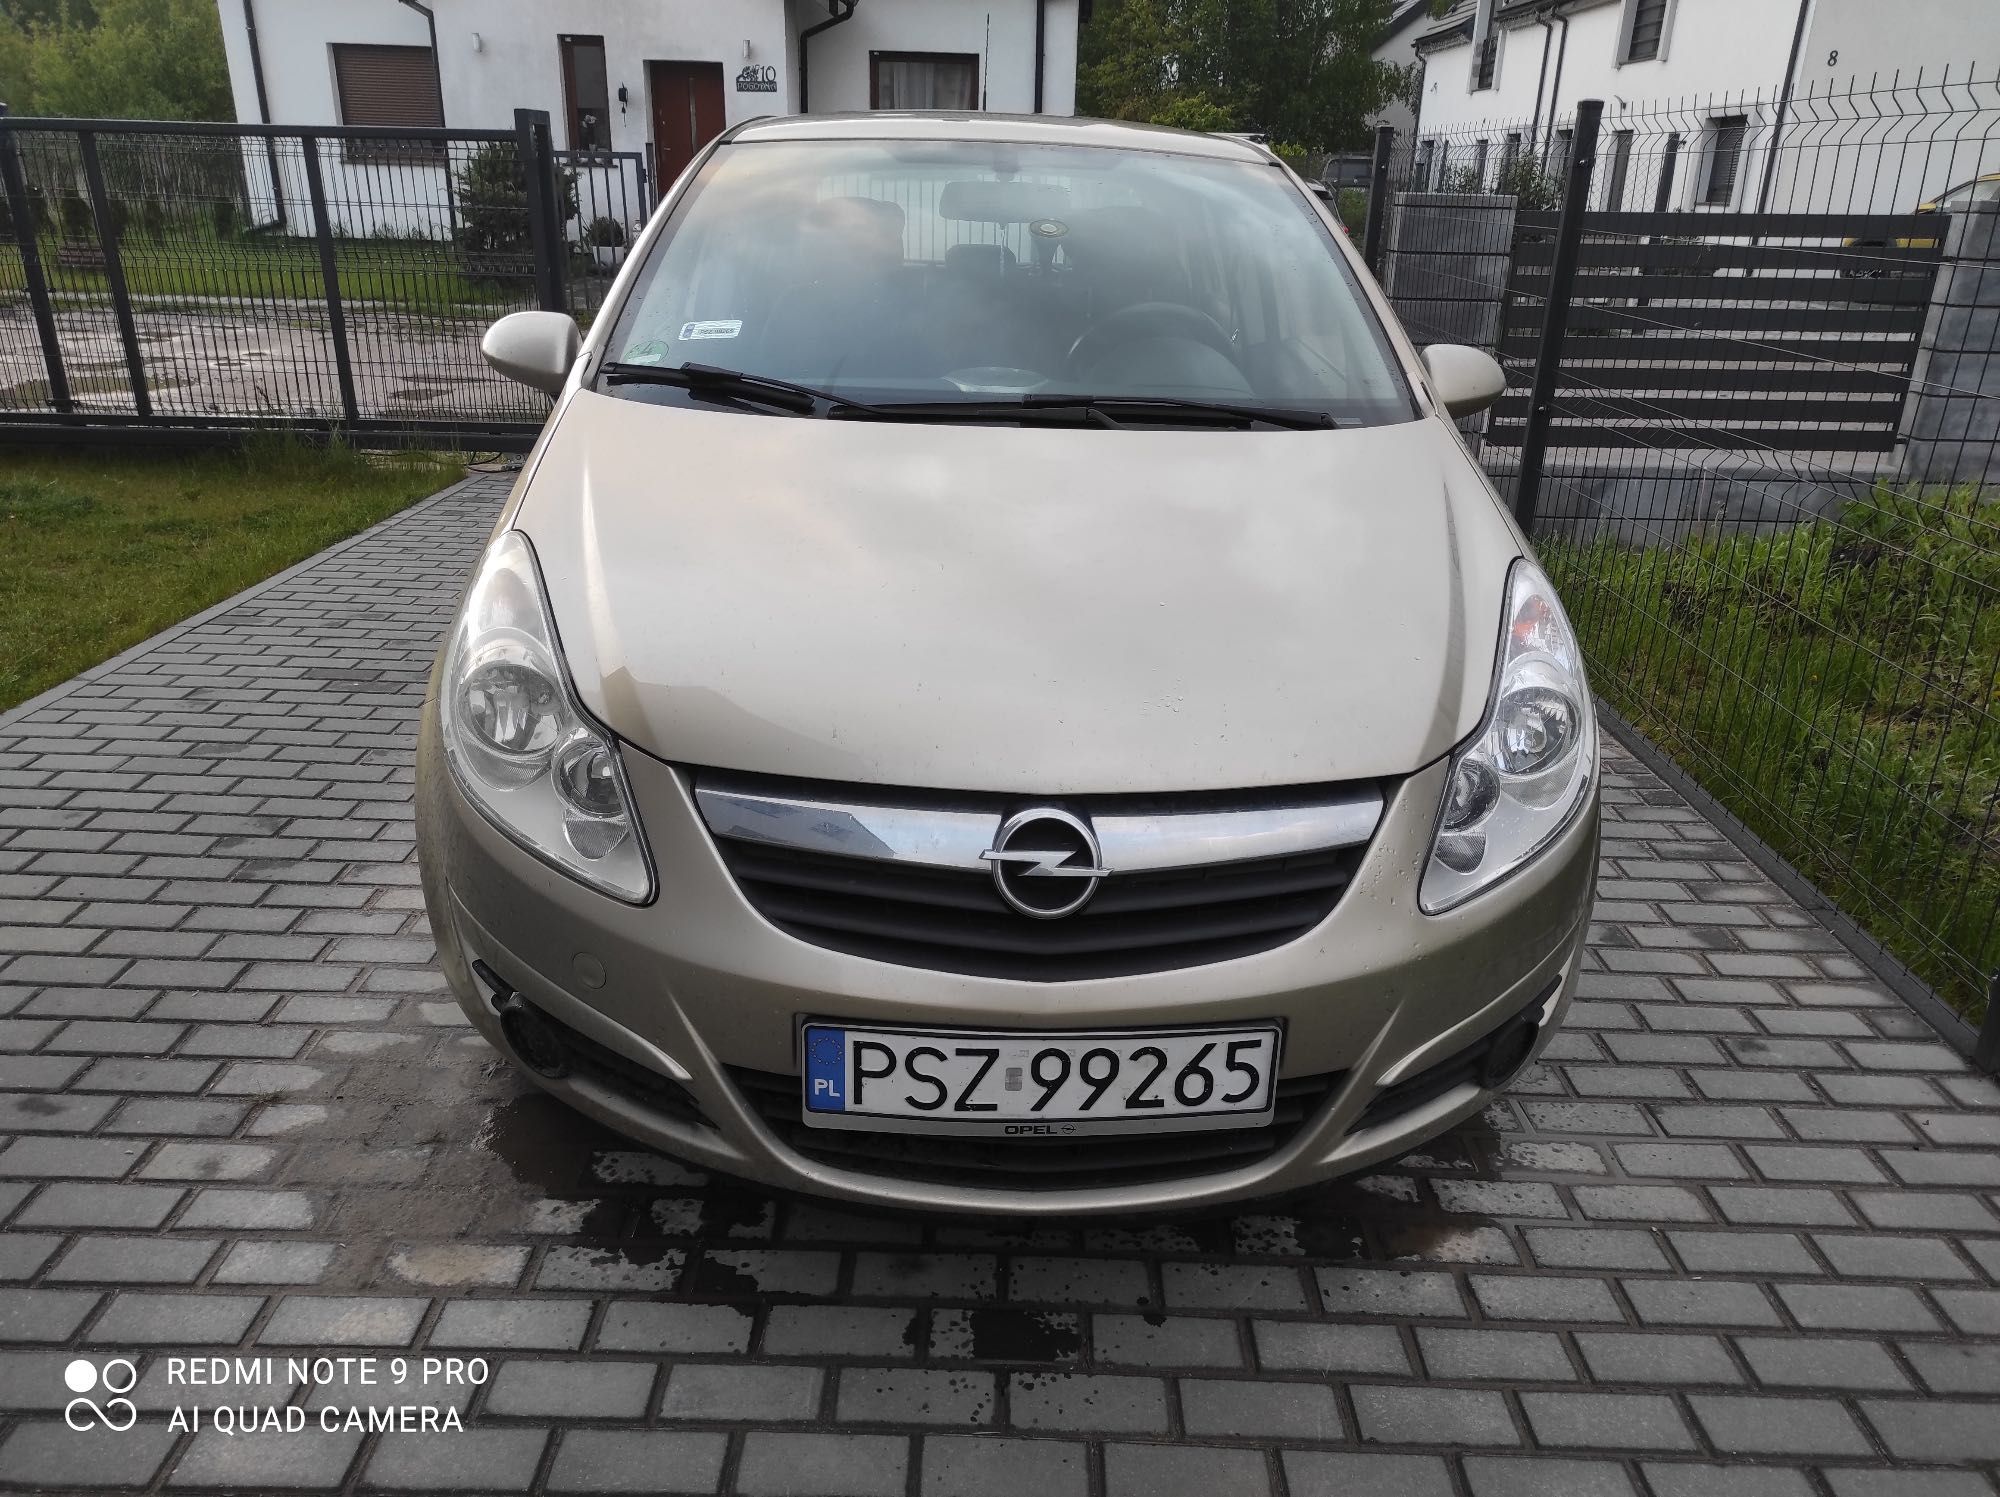 Syndyk masy upadłości sprzeda Opel Corsa